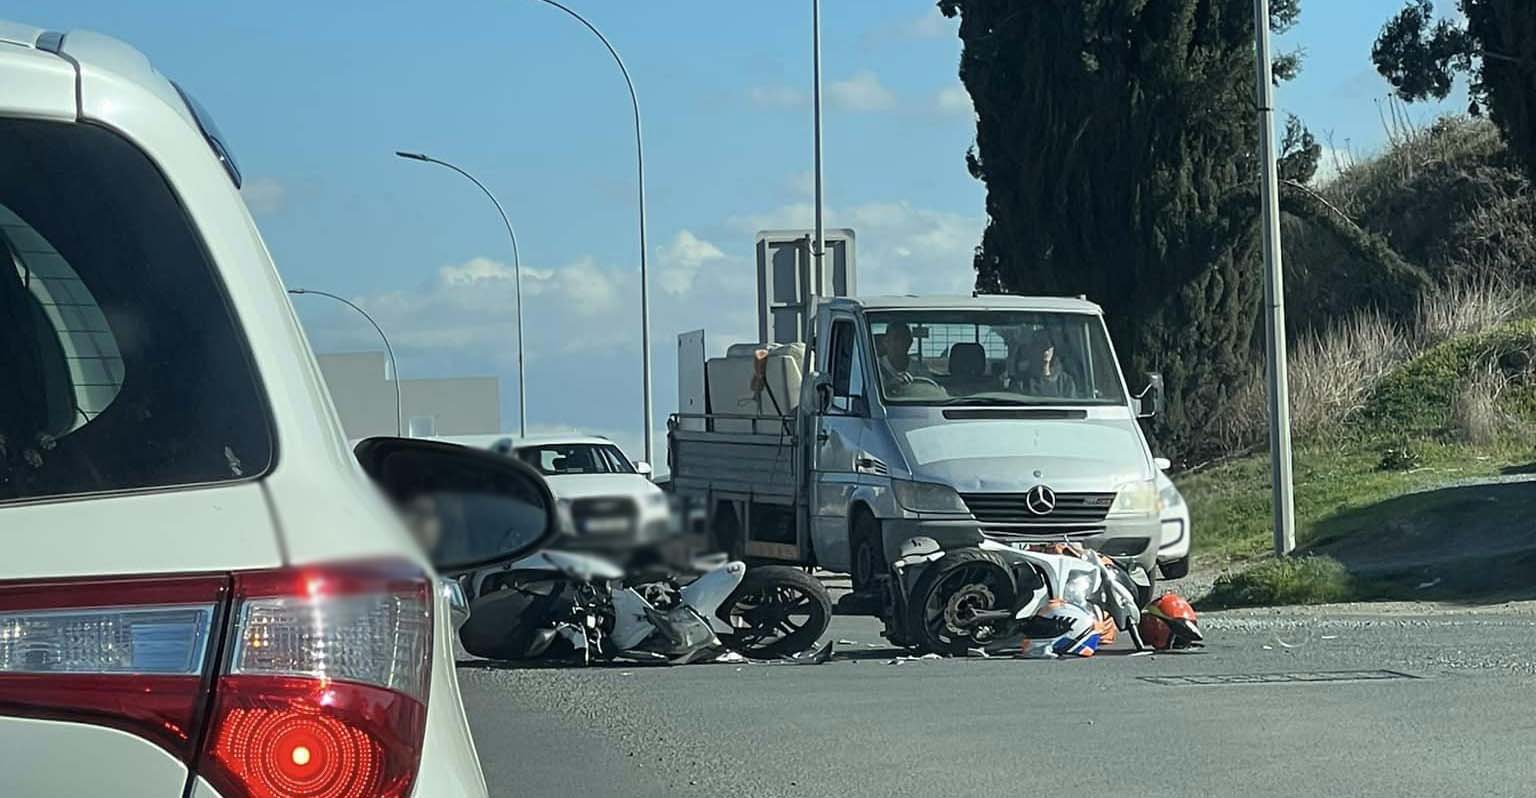 Τροχαίο ατύχημα με δυο μοτοσικλέτες στη Λευκωσία - Συγκρούστηκαν μεταξύ τους -Δείτε φωτογραφίες 